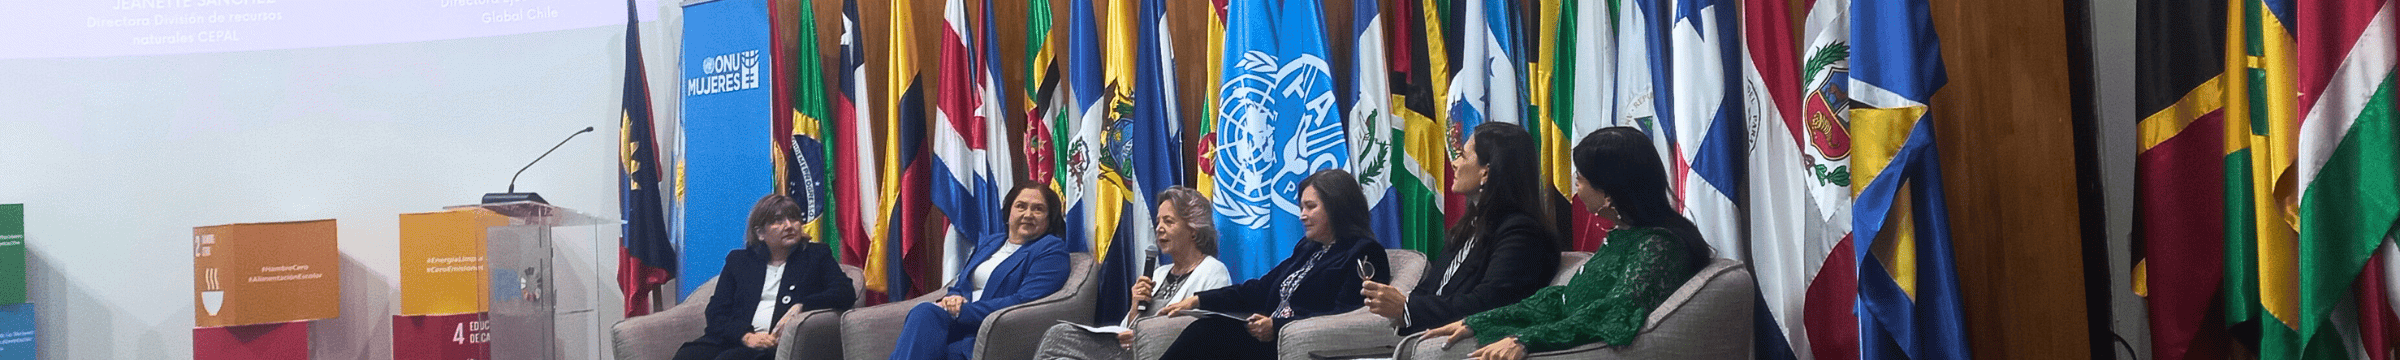 panel de conversación en ONU mujeres